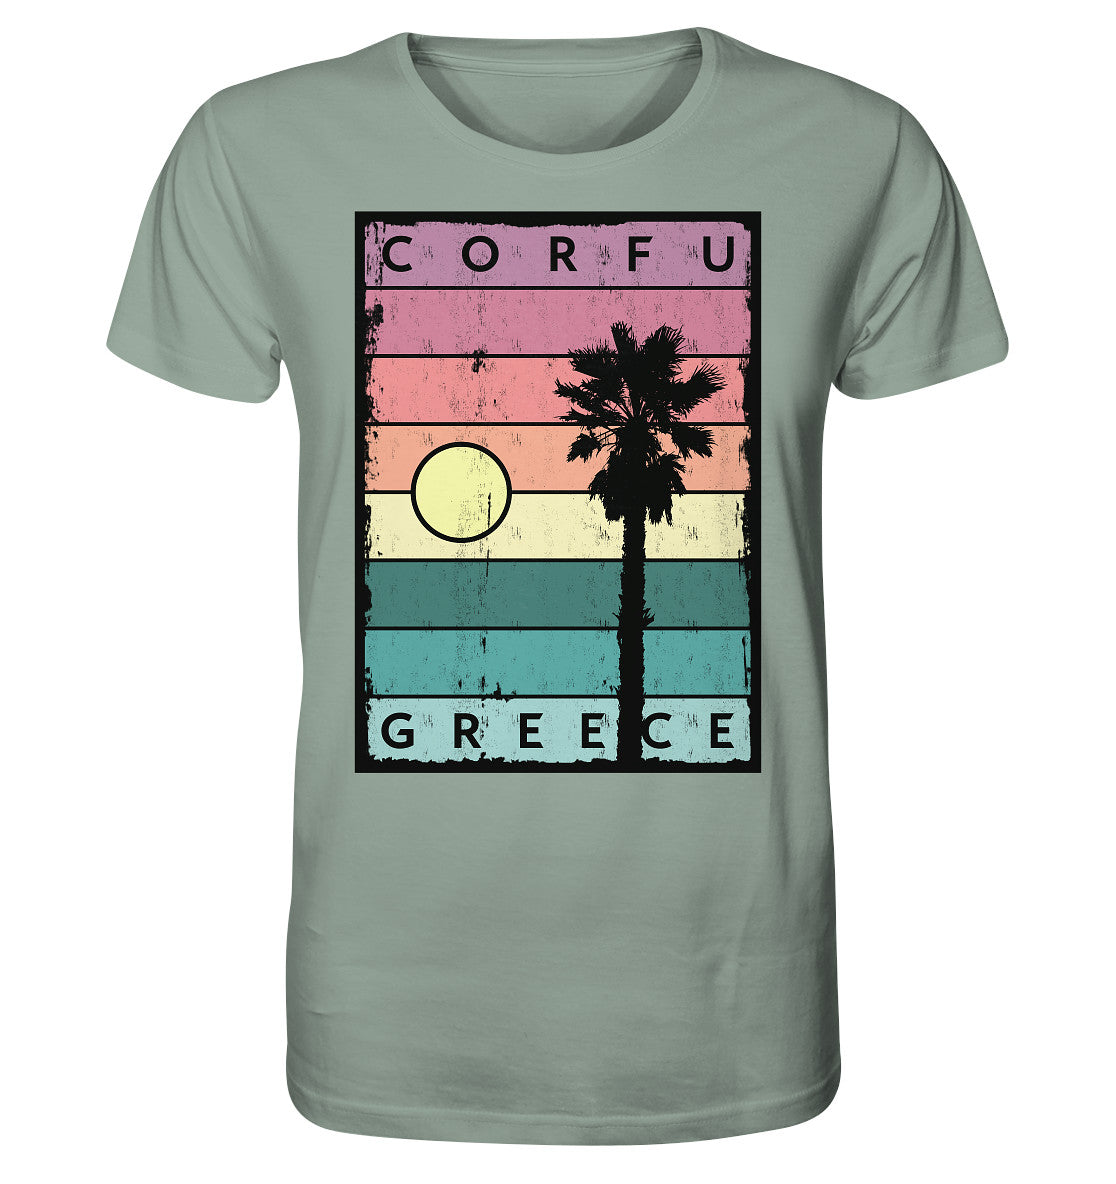 Sunset strips & Palm tree Corfu Greece - Organic Shirt